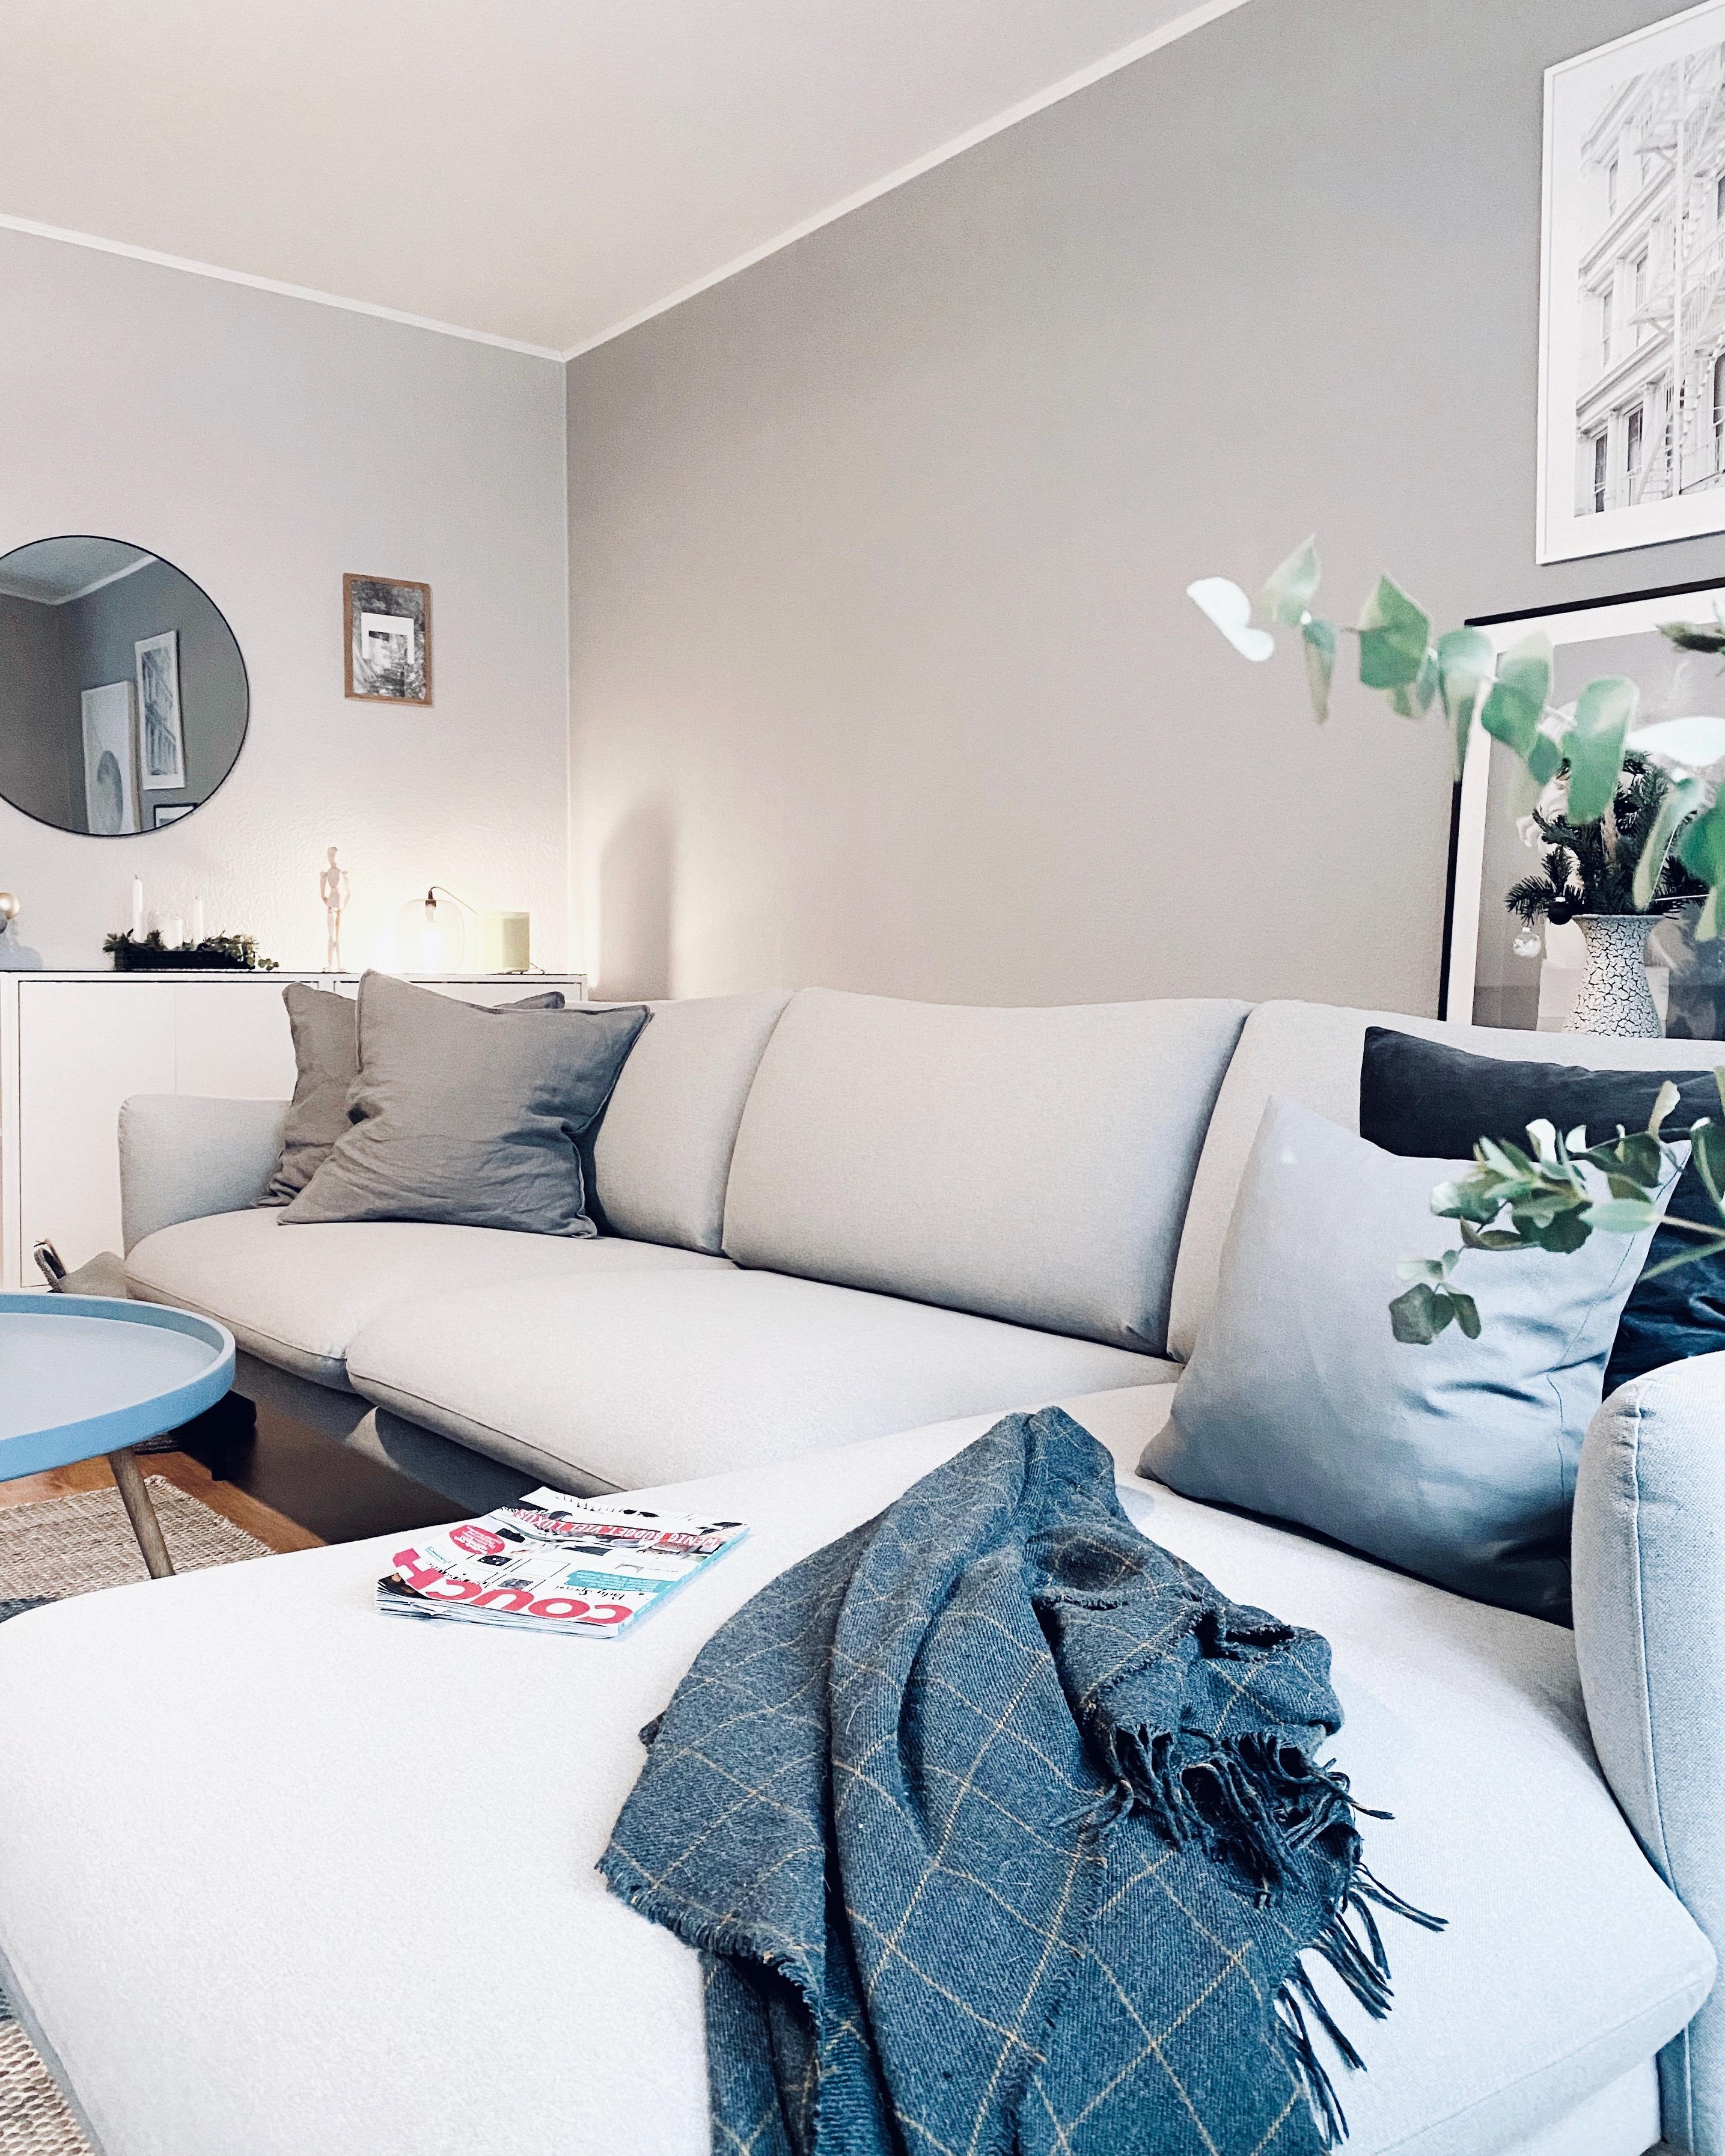 #livingroom #interior #nordicroom #scandinaviandesign #scandinavianliving #hygge #greylove #bilderwand